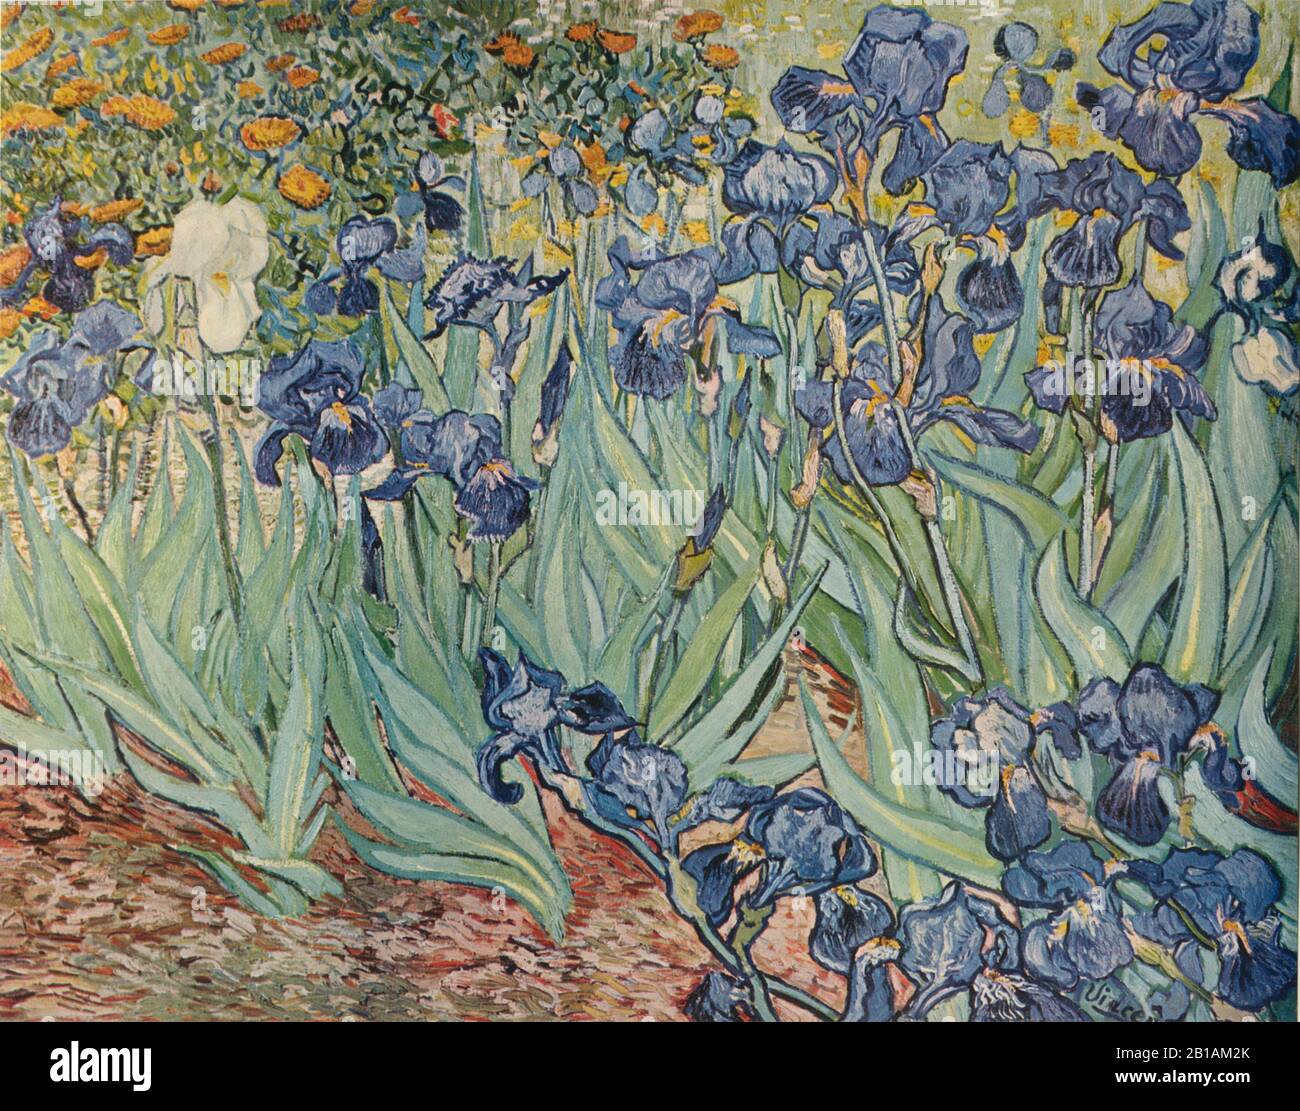 Dipinto del 1889 di Vincent van Gogh - immagine Ad Altissima risoluzione e qualità Foto Stock